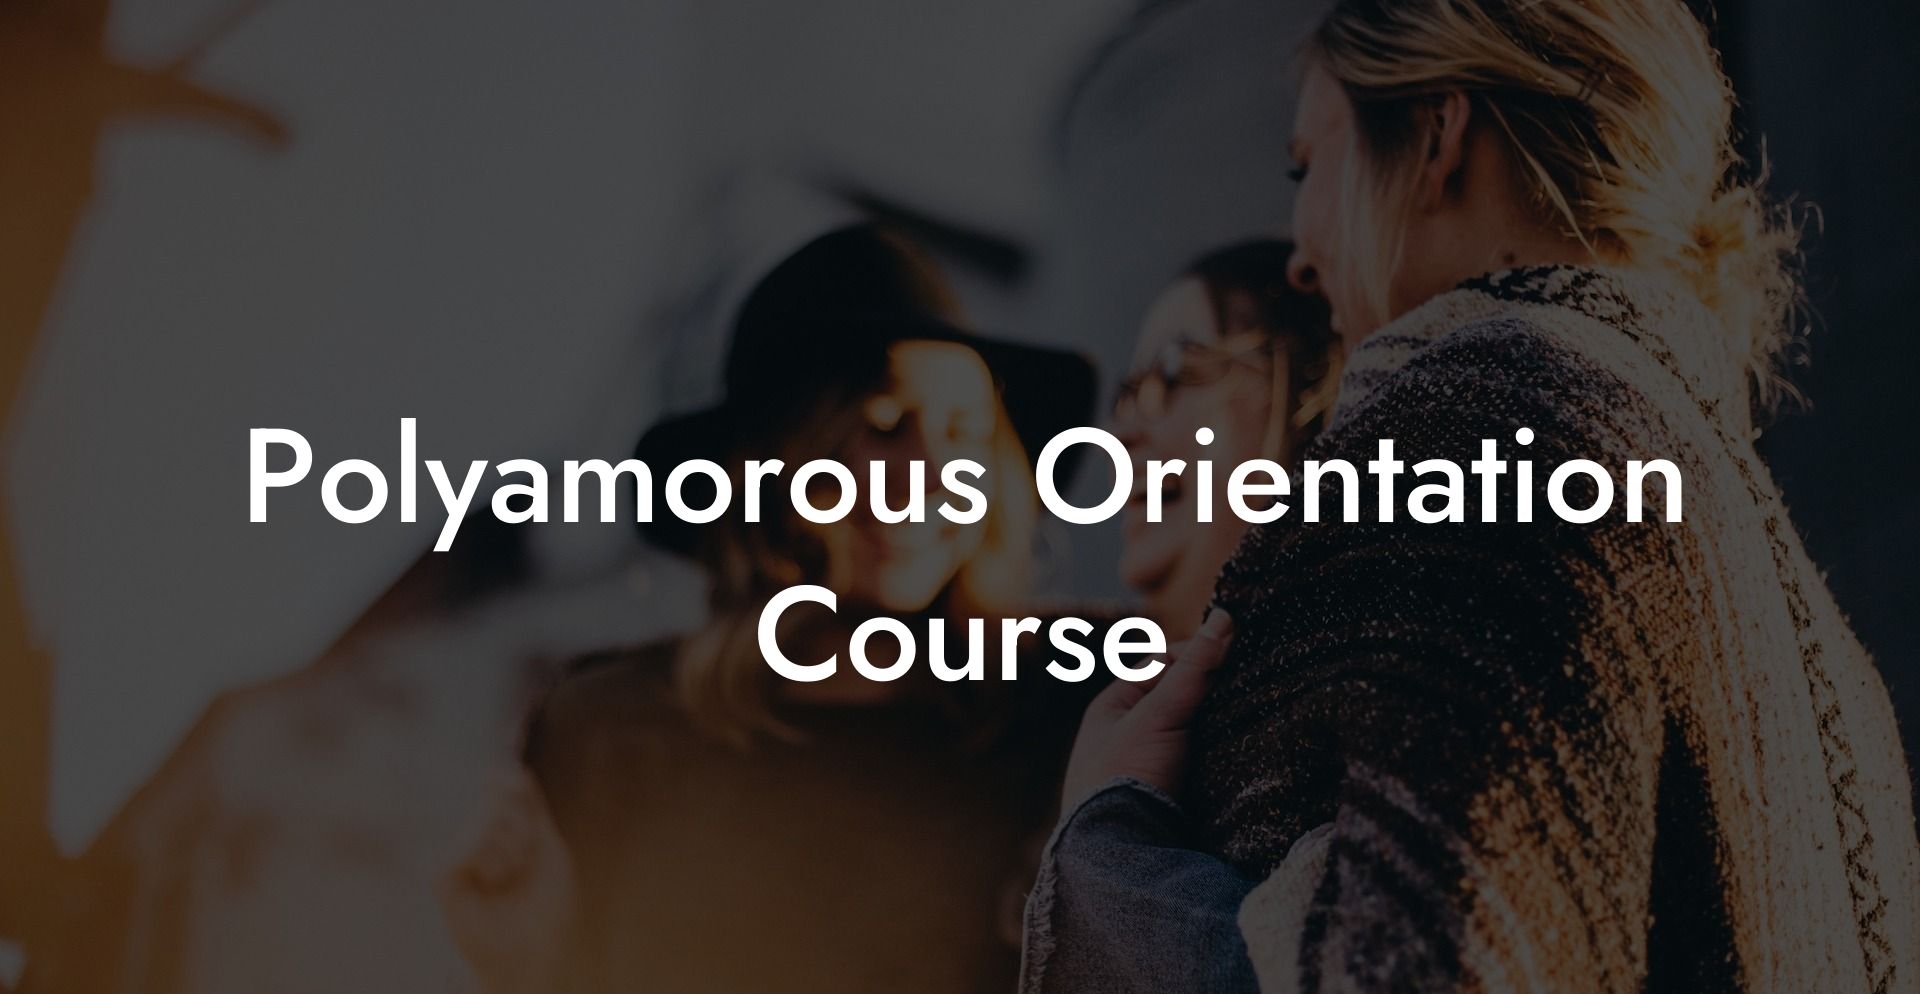 Polyamorous Orientation Course